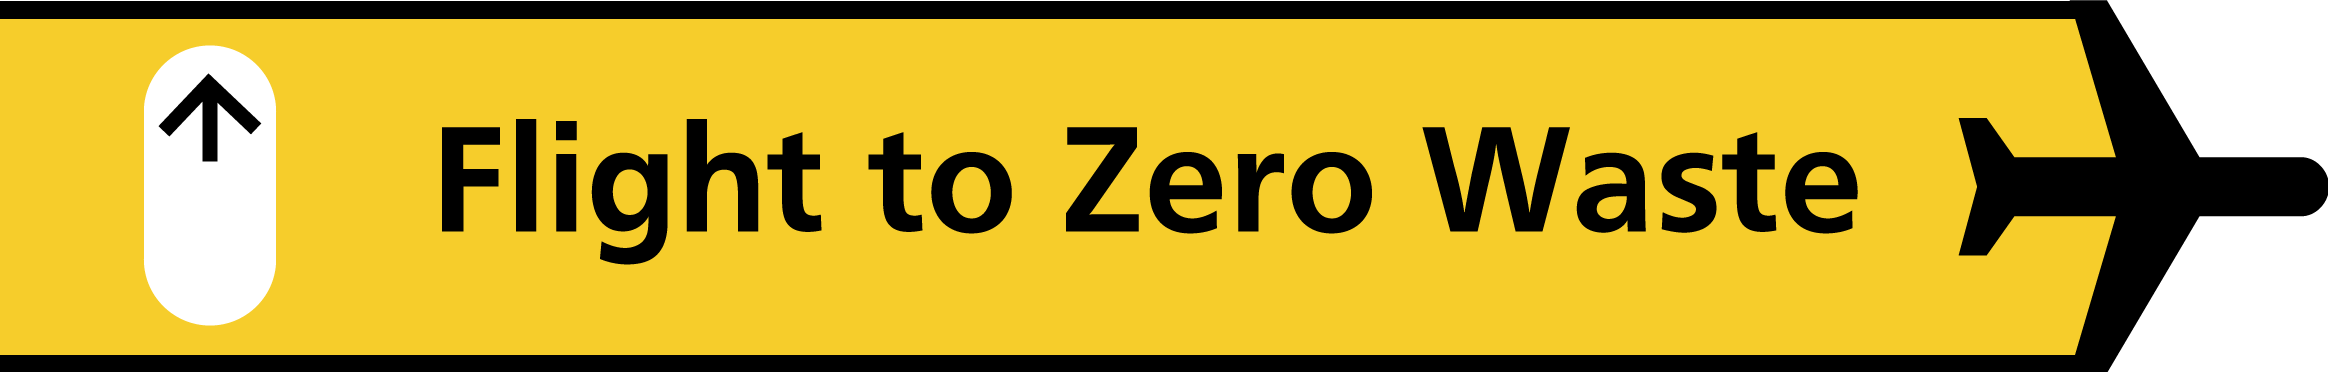 Logo flight to zero waste v1 zonder logo